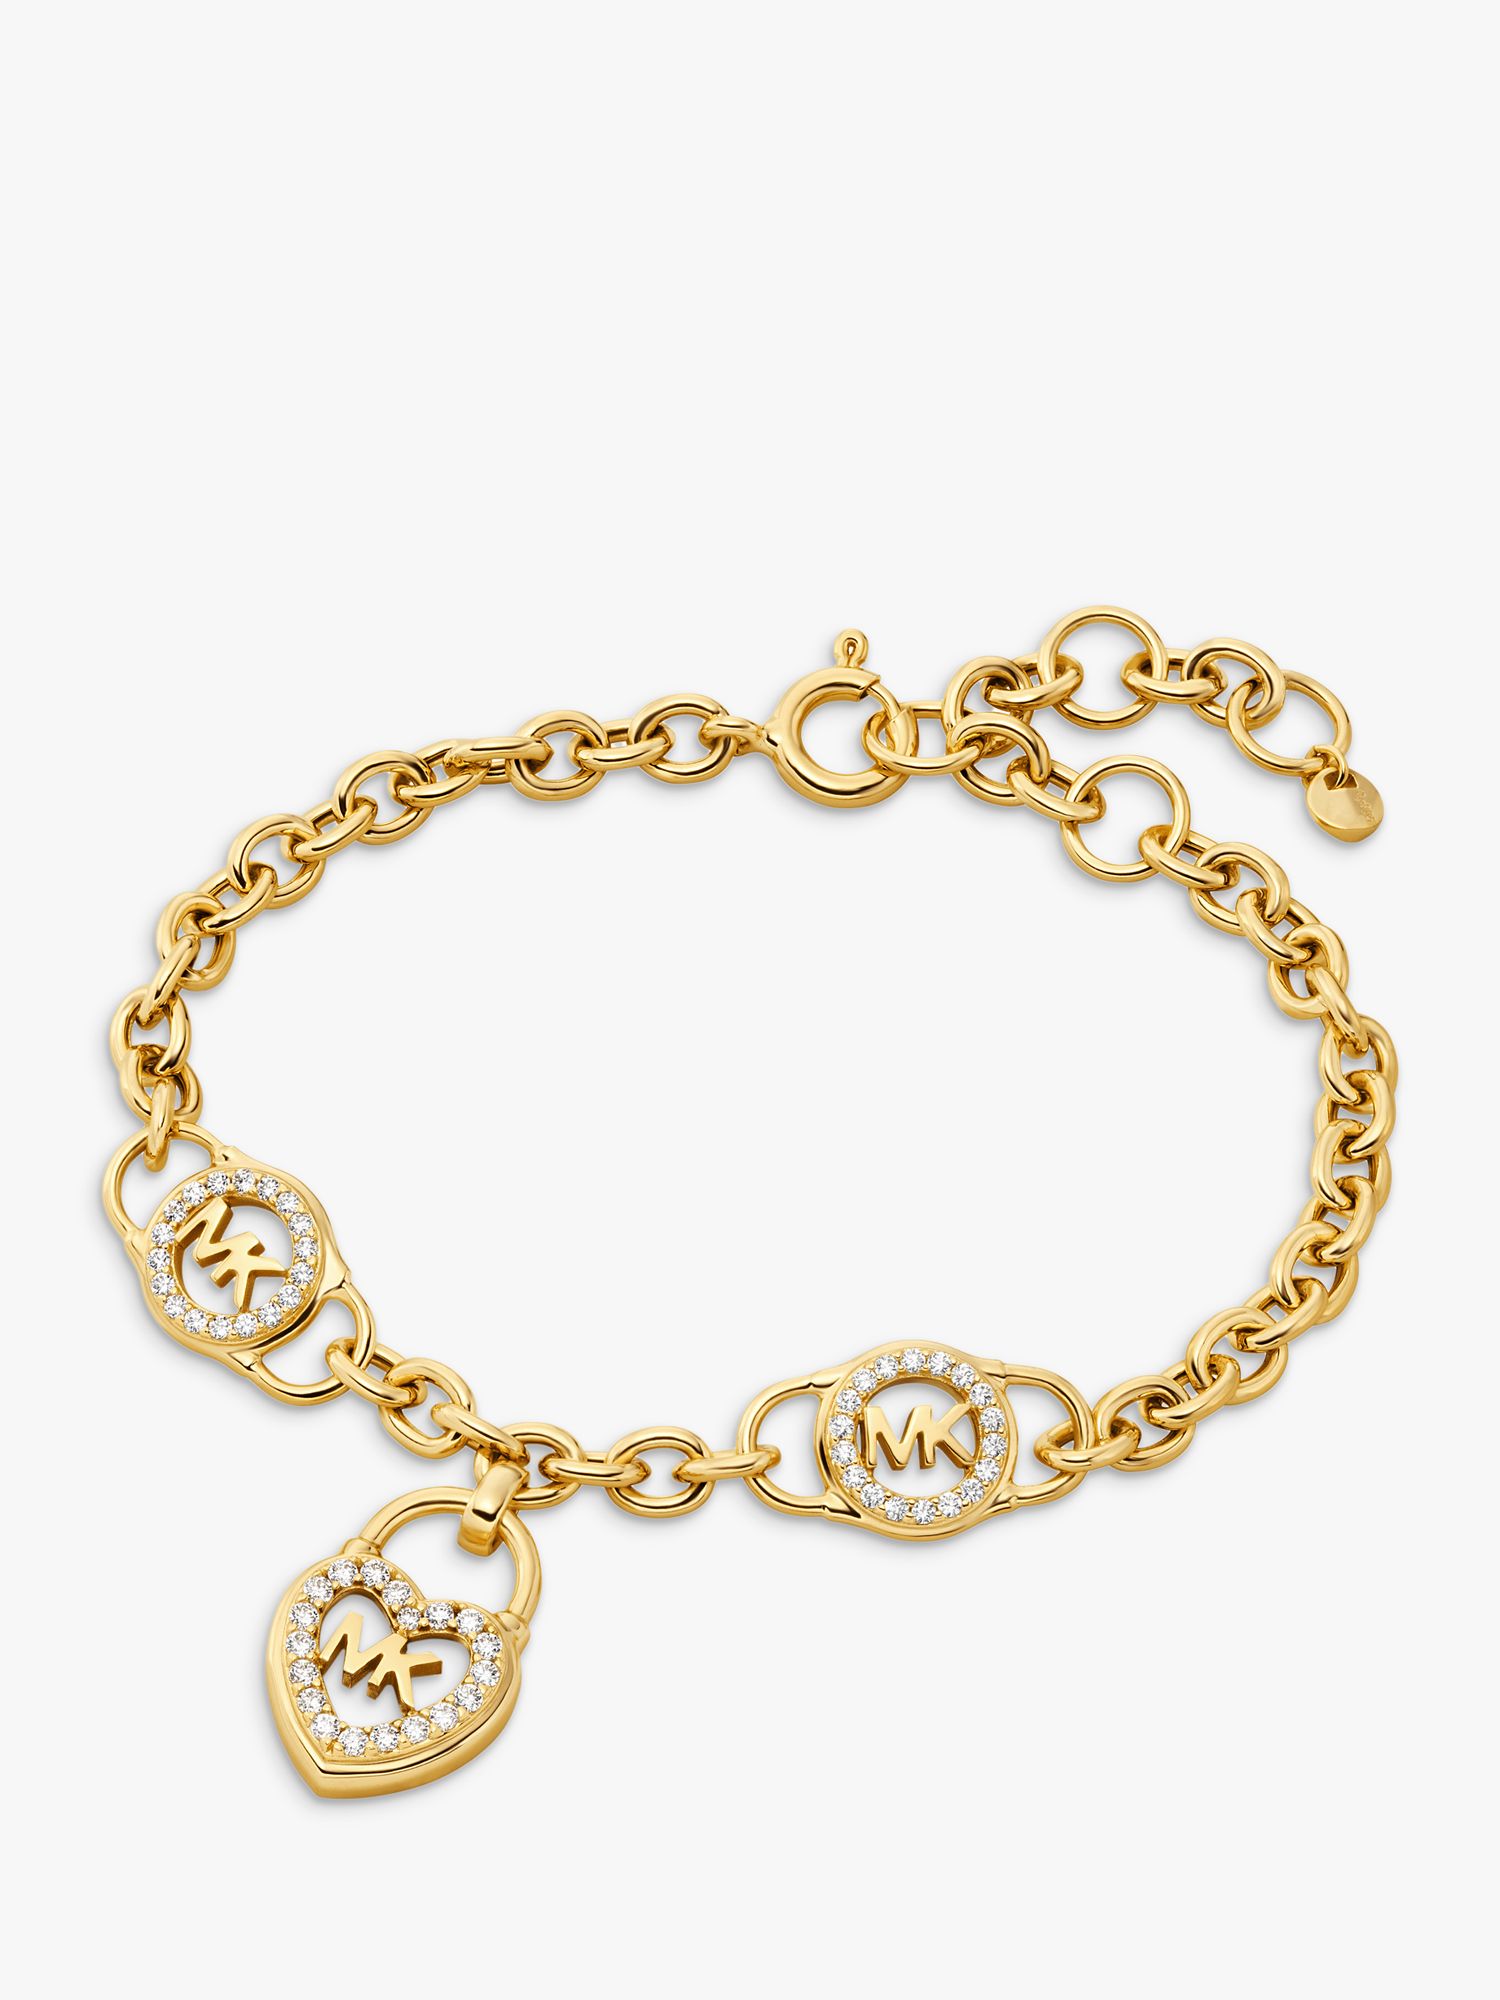 Michael Kors MK Mother of Pearl Lock Heart Chain Bracelet, Gold